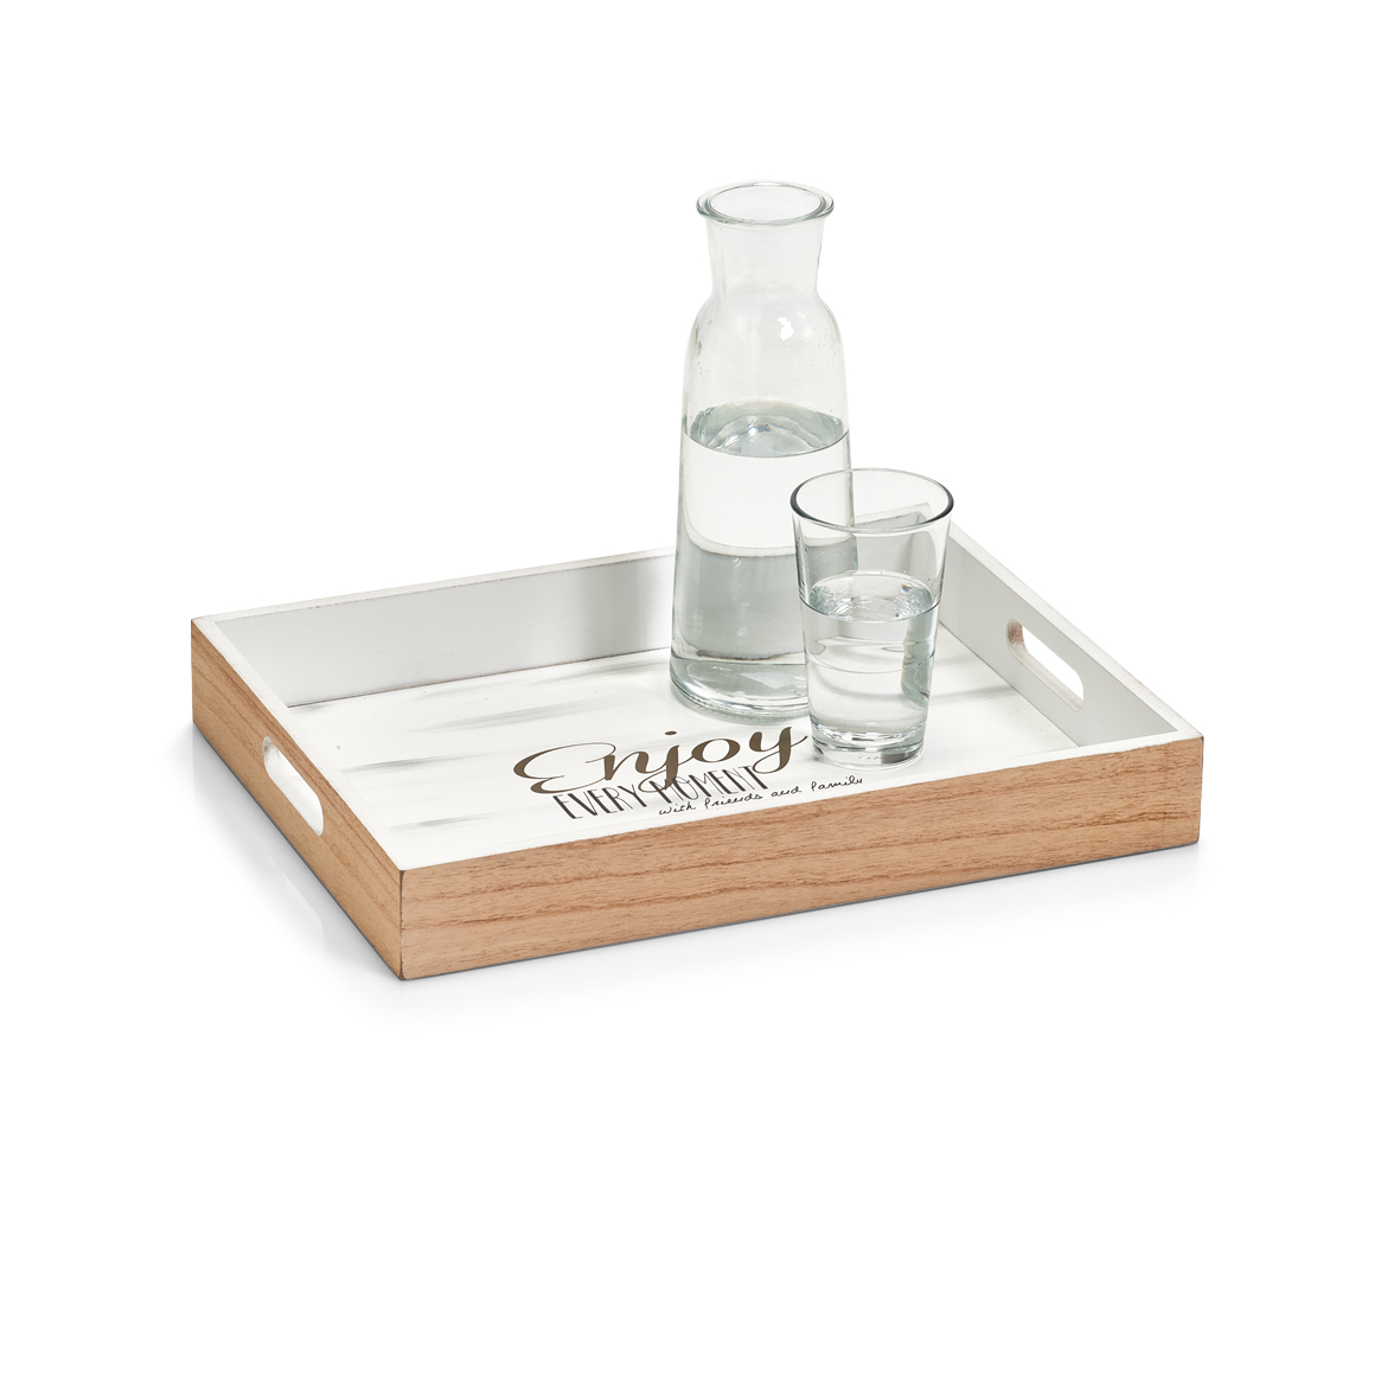 Tablett, Poliniaholz gekalkt, 40x30x5,5 cm. Farbe: weiß. Dieses moderne und robuste Tablett wurde aus hochwertigem Poloniaholz gefertigt und